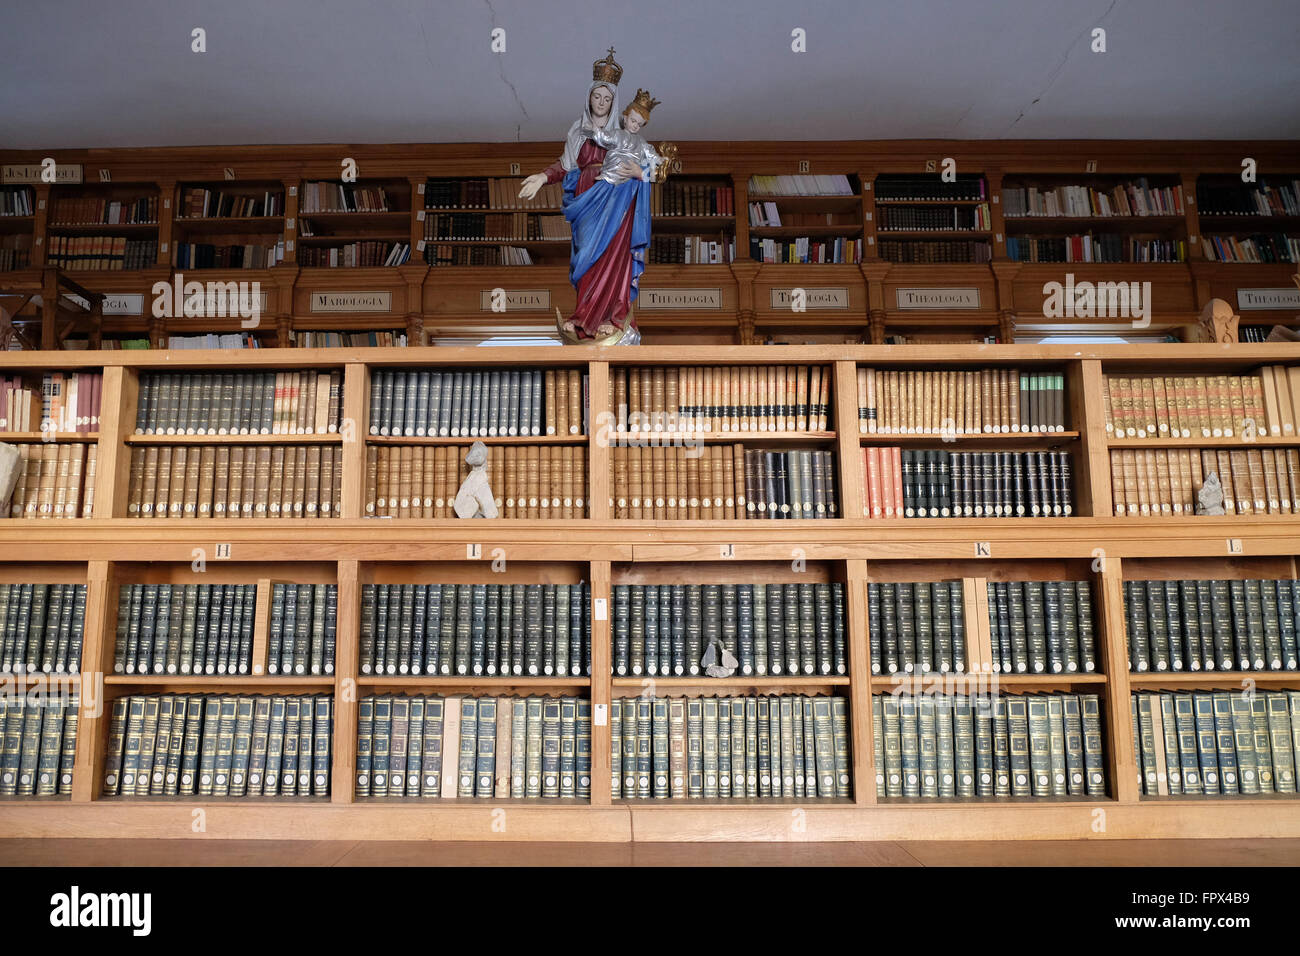 La bibliothèque dans la région de la chartreuse de Pleterje, Slovénie, le 06 novembre 2015. Banque D'Images